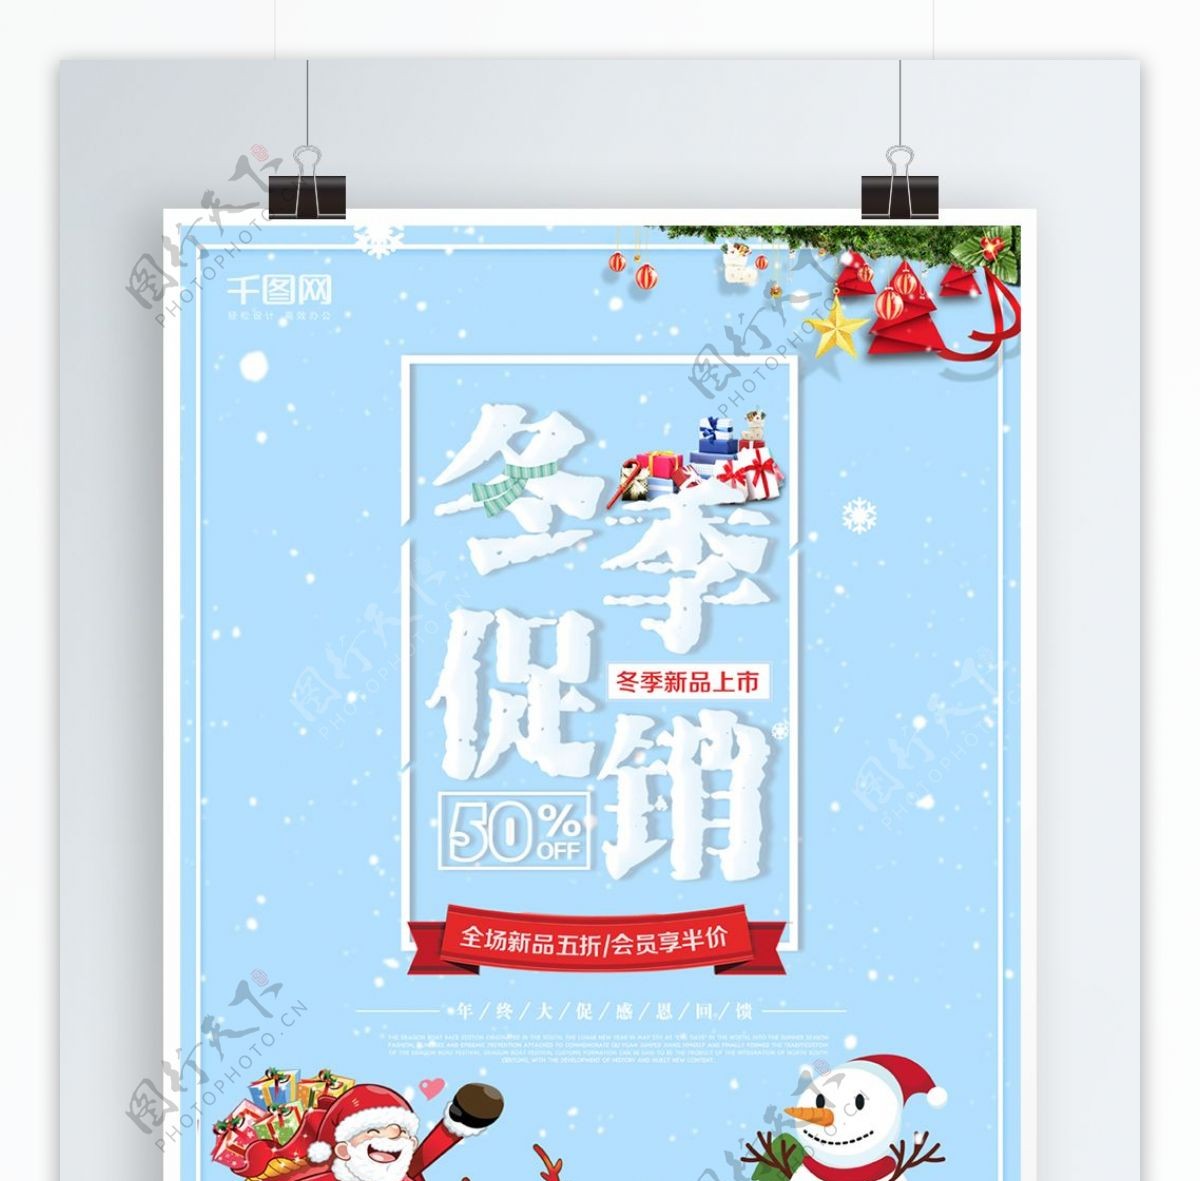 简约小清新冬季促销海报设计模板